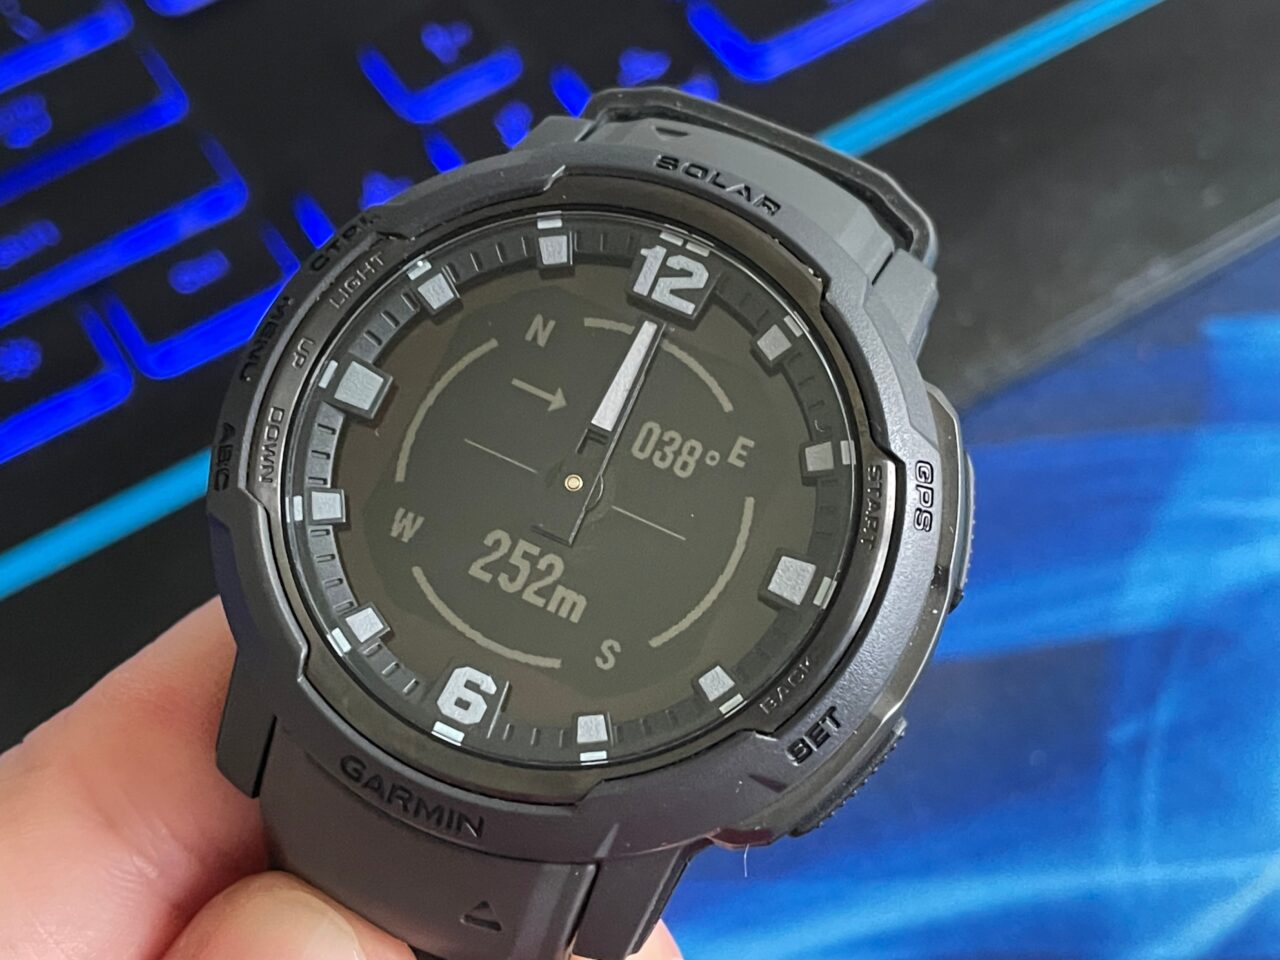 Czarny cyfrowy zegarek sportowy marki Garmin na tle podświetlanej klawiatury komputerowej, wyświetlający kierunek oraz wysokość nad poziomem morza.